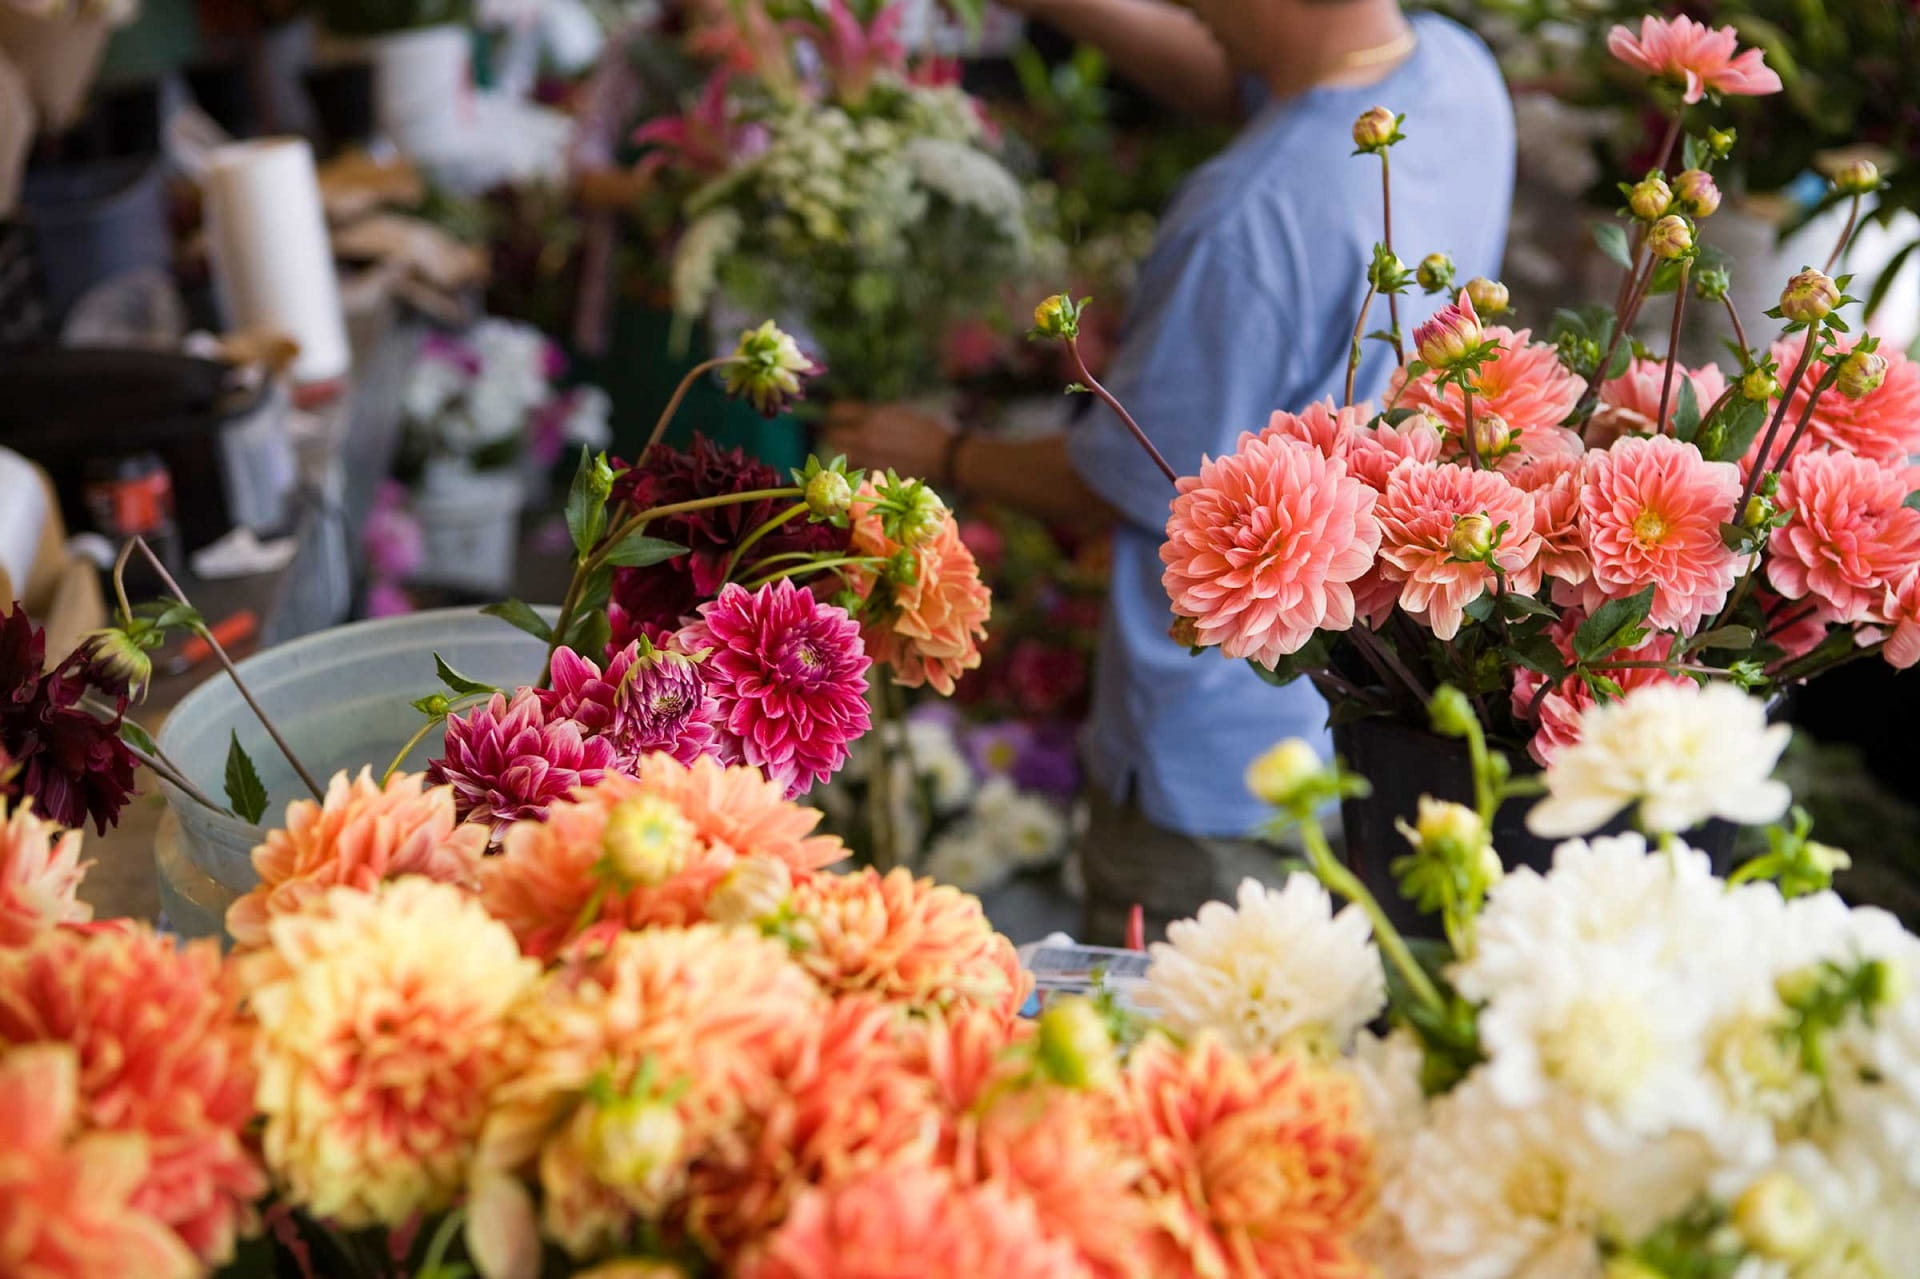 Thiết kế shop hoa tươi đẹp – Bí quyết giúp việc kinh doanh hoa tươi thành công